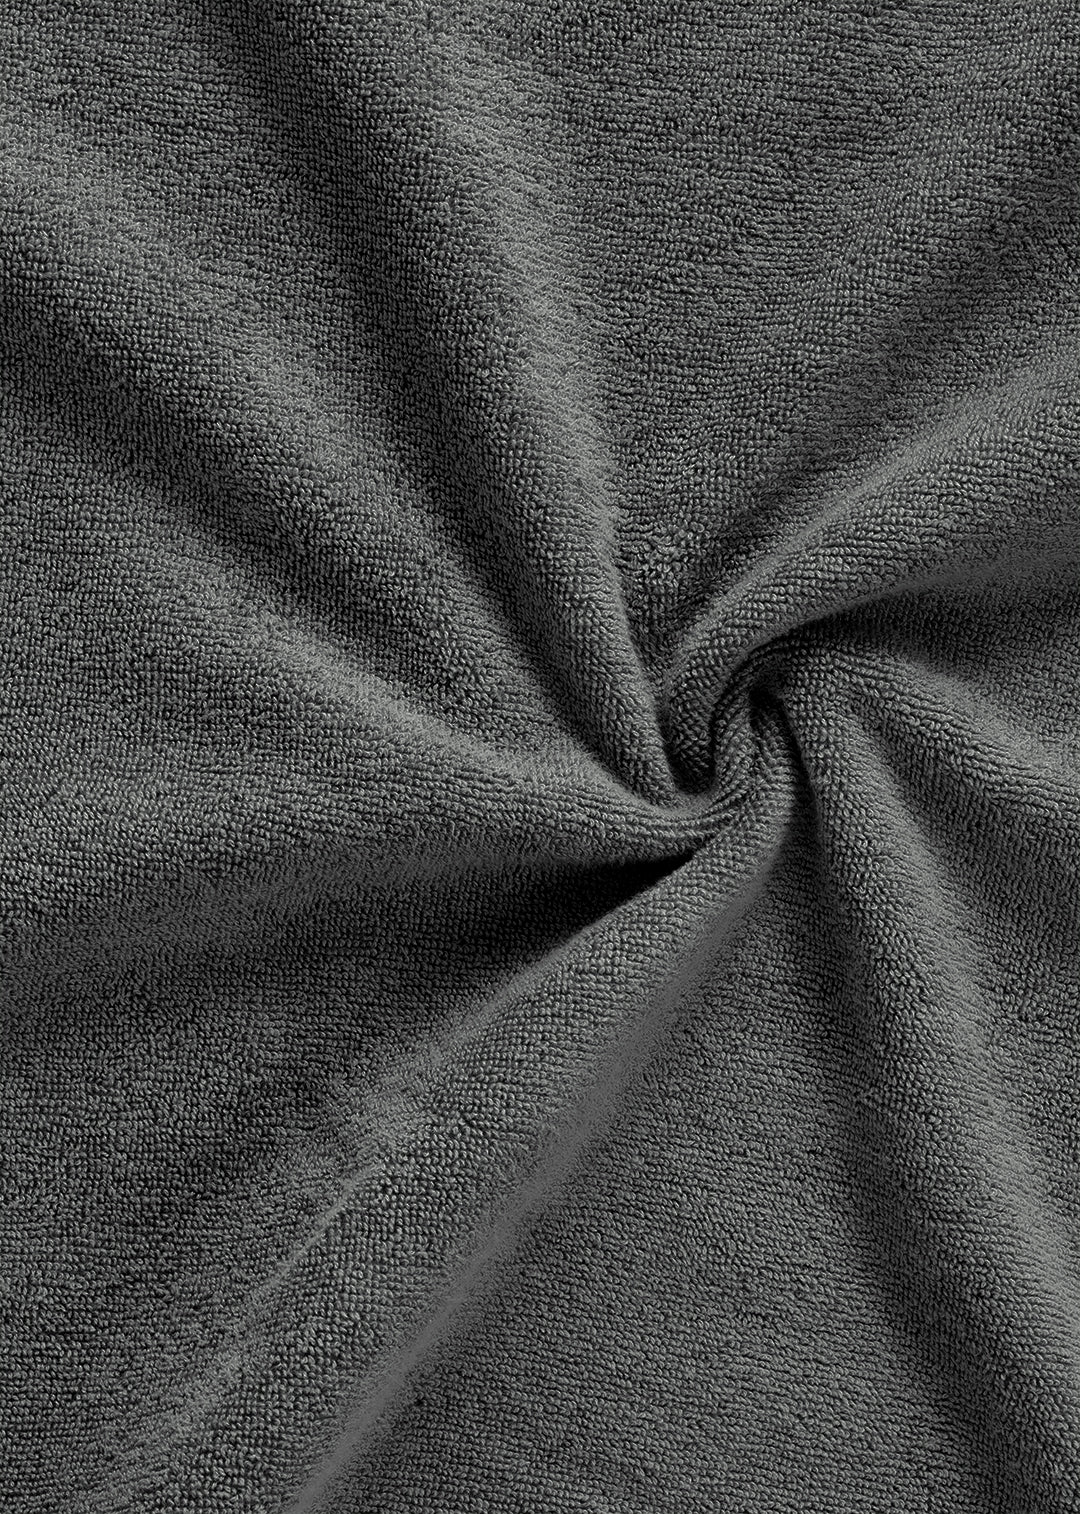 Oplev Luksus Studio Sekan med Håndklæde | ByNordico – Frotté Antracitgrå